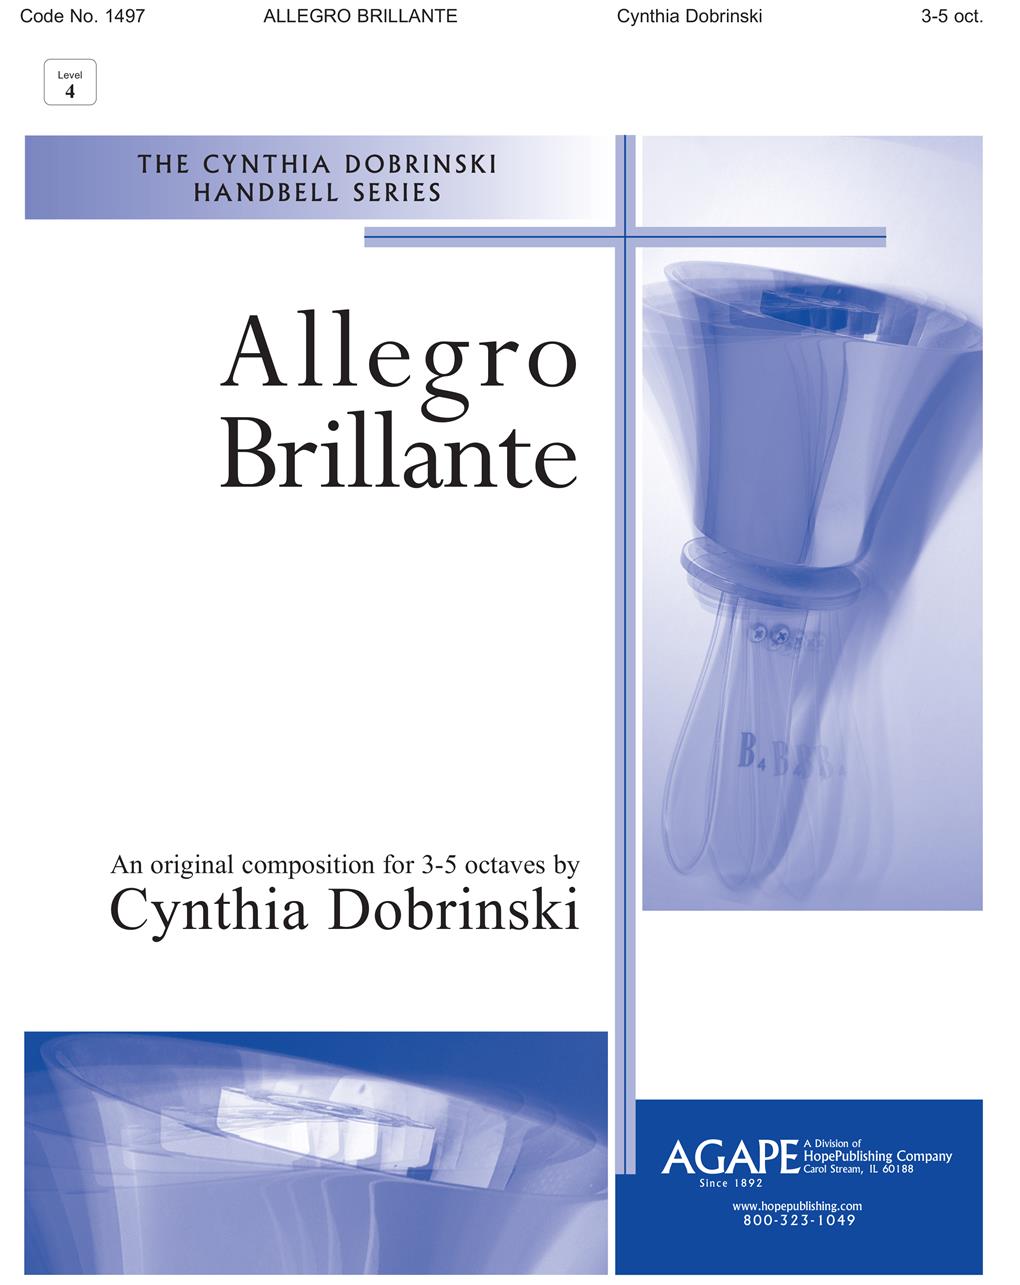 Allegro Brillante - 3-5 Oct. Cover Image